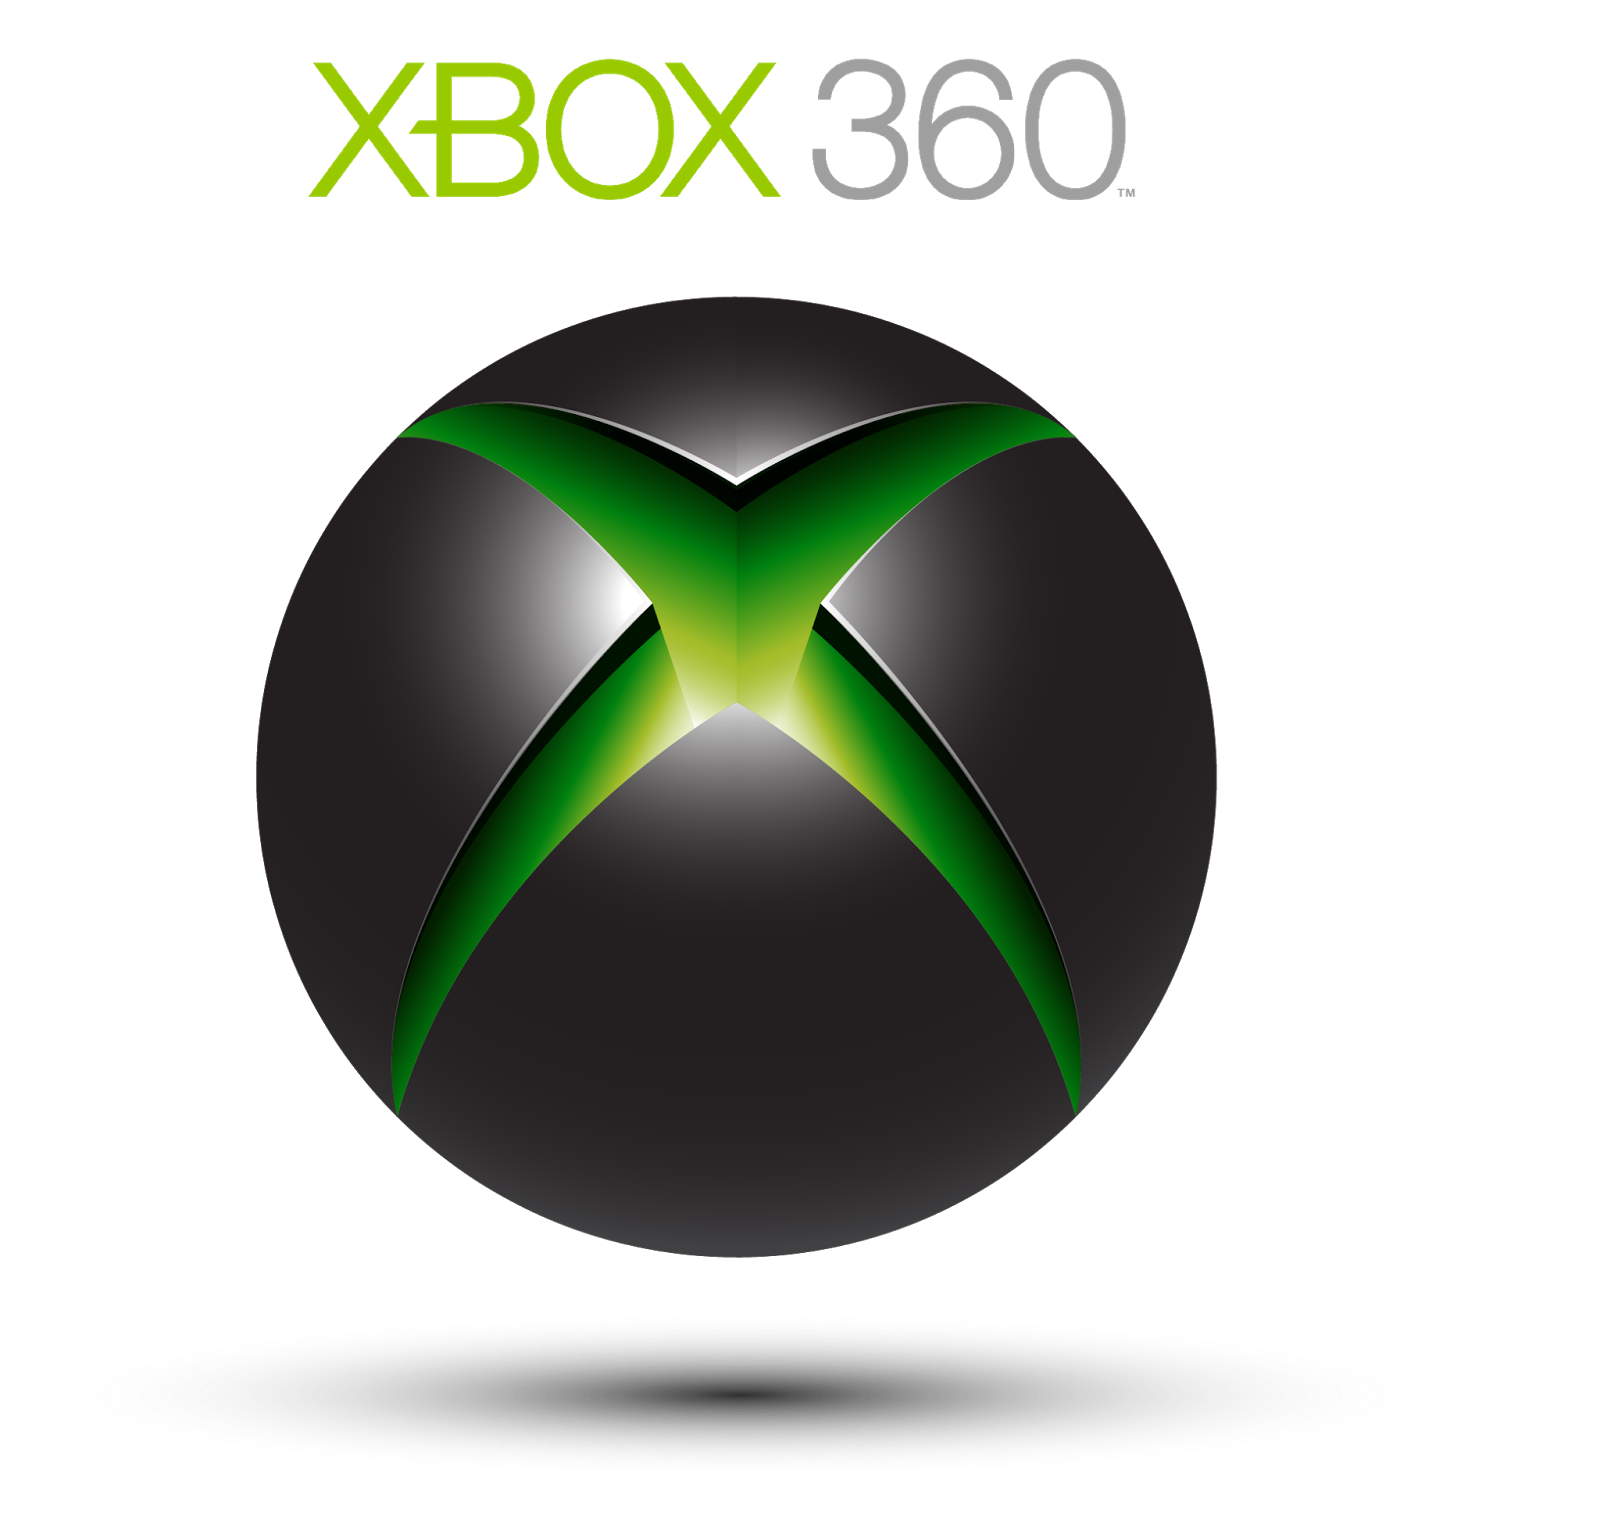 Xbox 360. Xbox 360 лого. Microsoft Xbox 360 logo. Икс бокс 360 значок. Xbox company